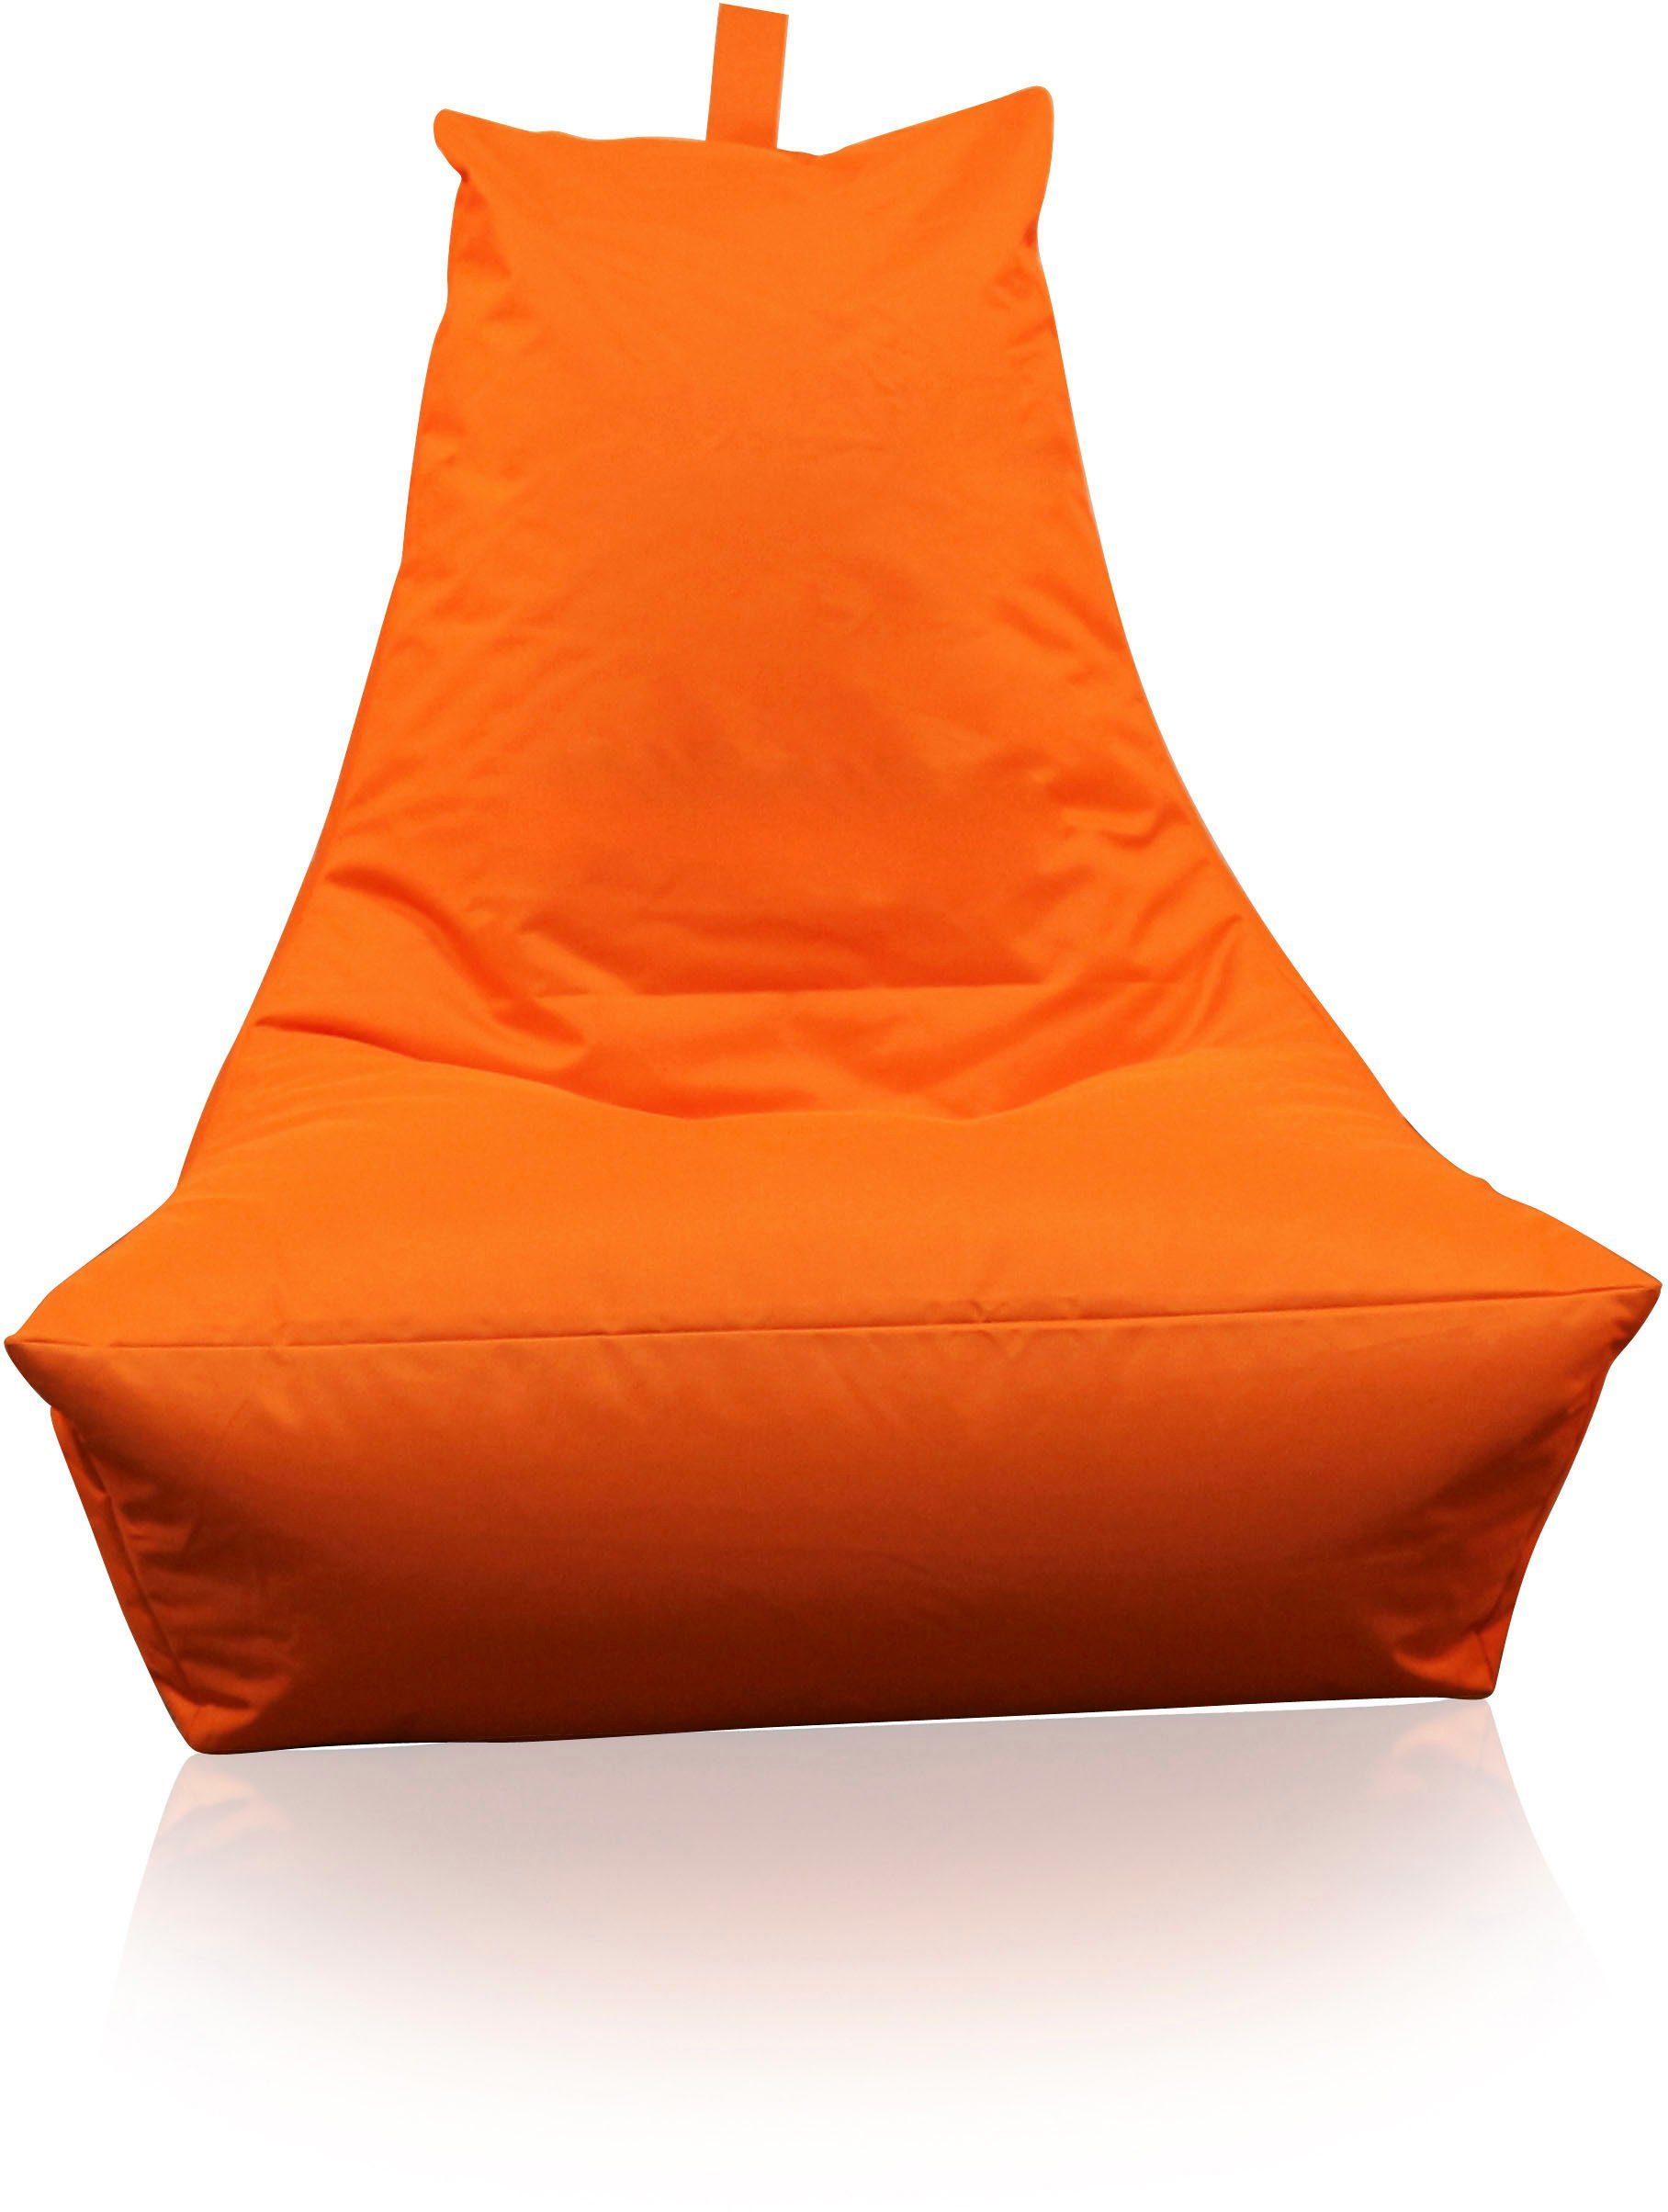 KiNZLER Sitzsack (1 Lounge orange St)